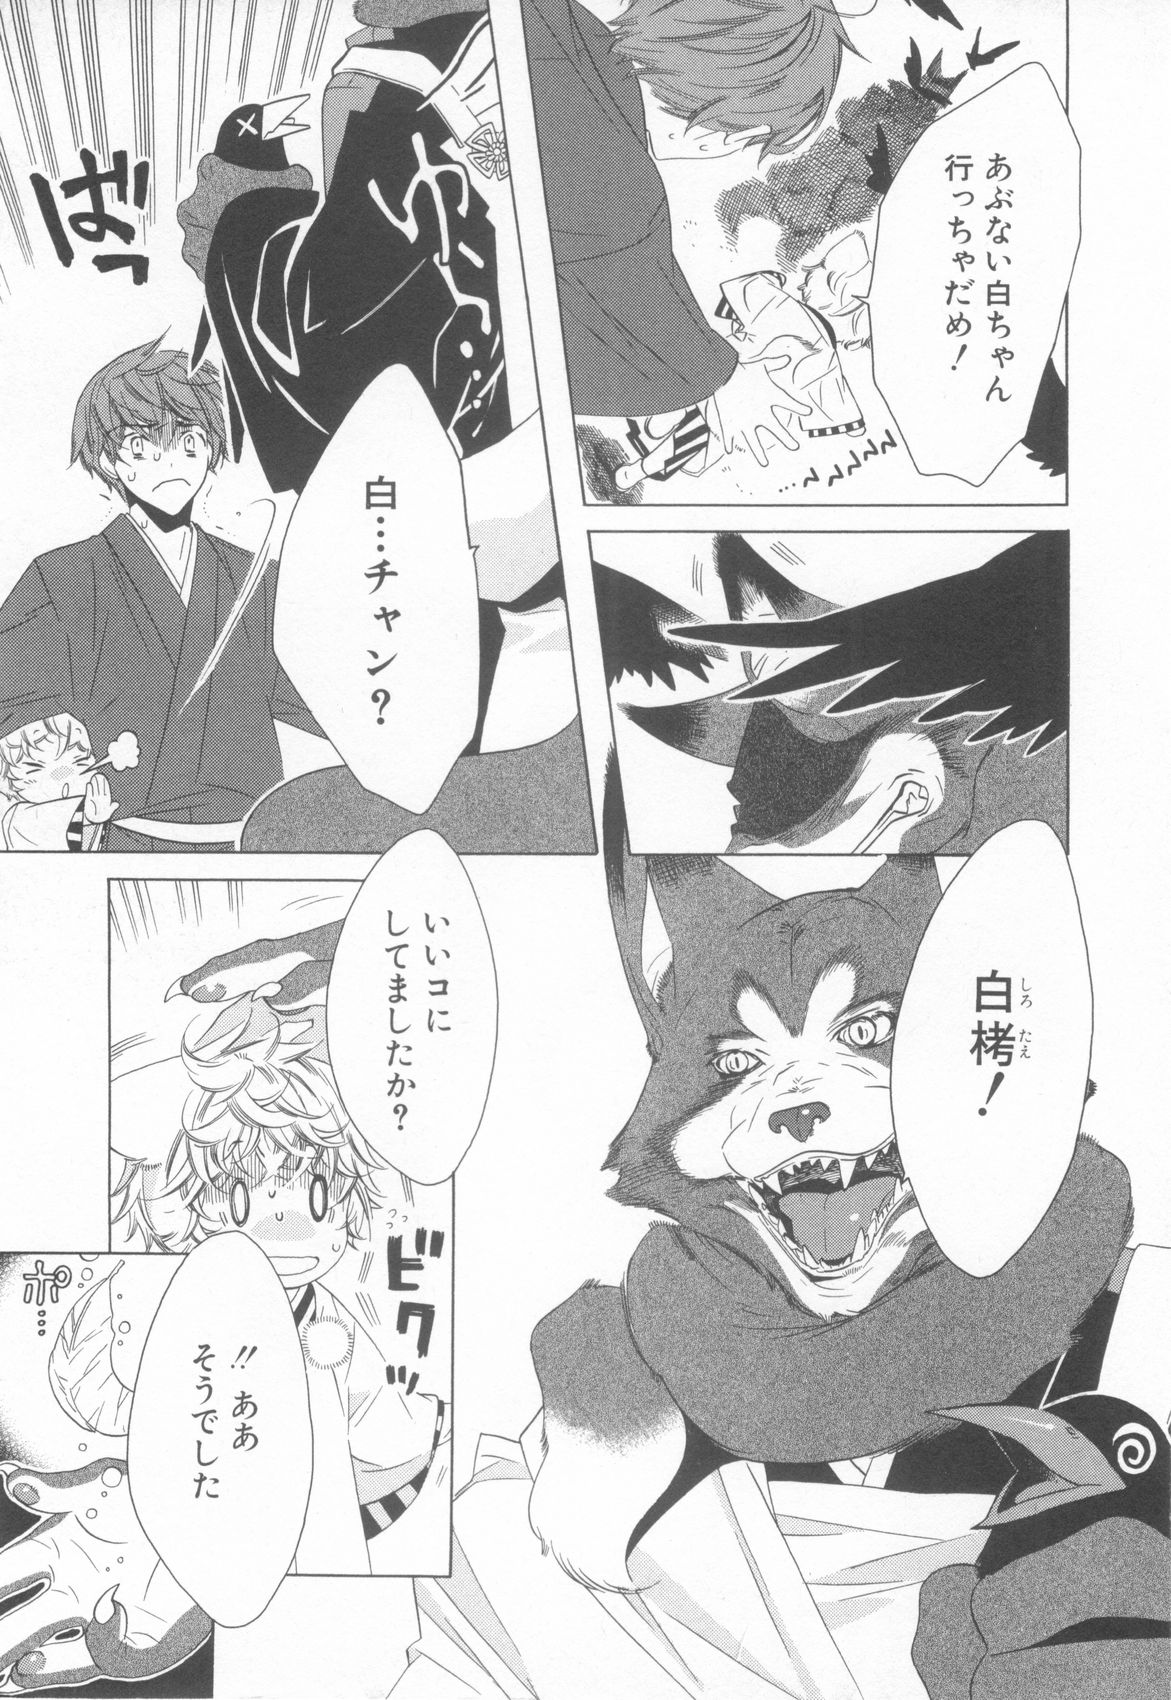 [Anthology] Shota Tama Vol. 3 page 29 full